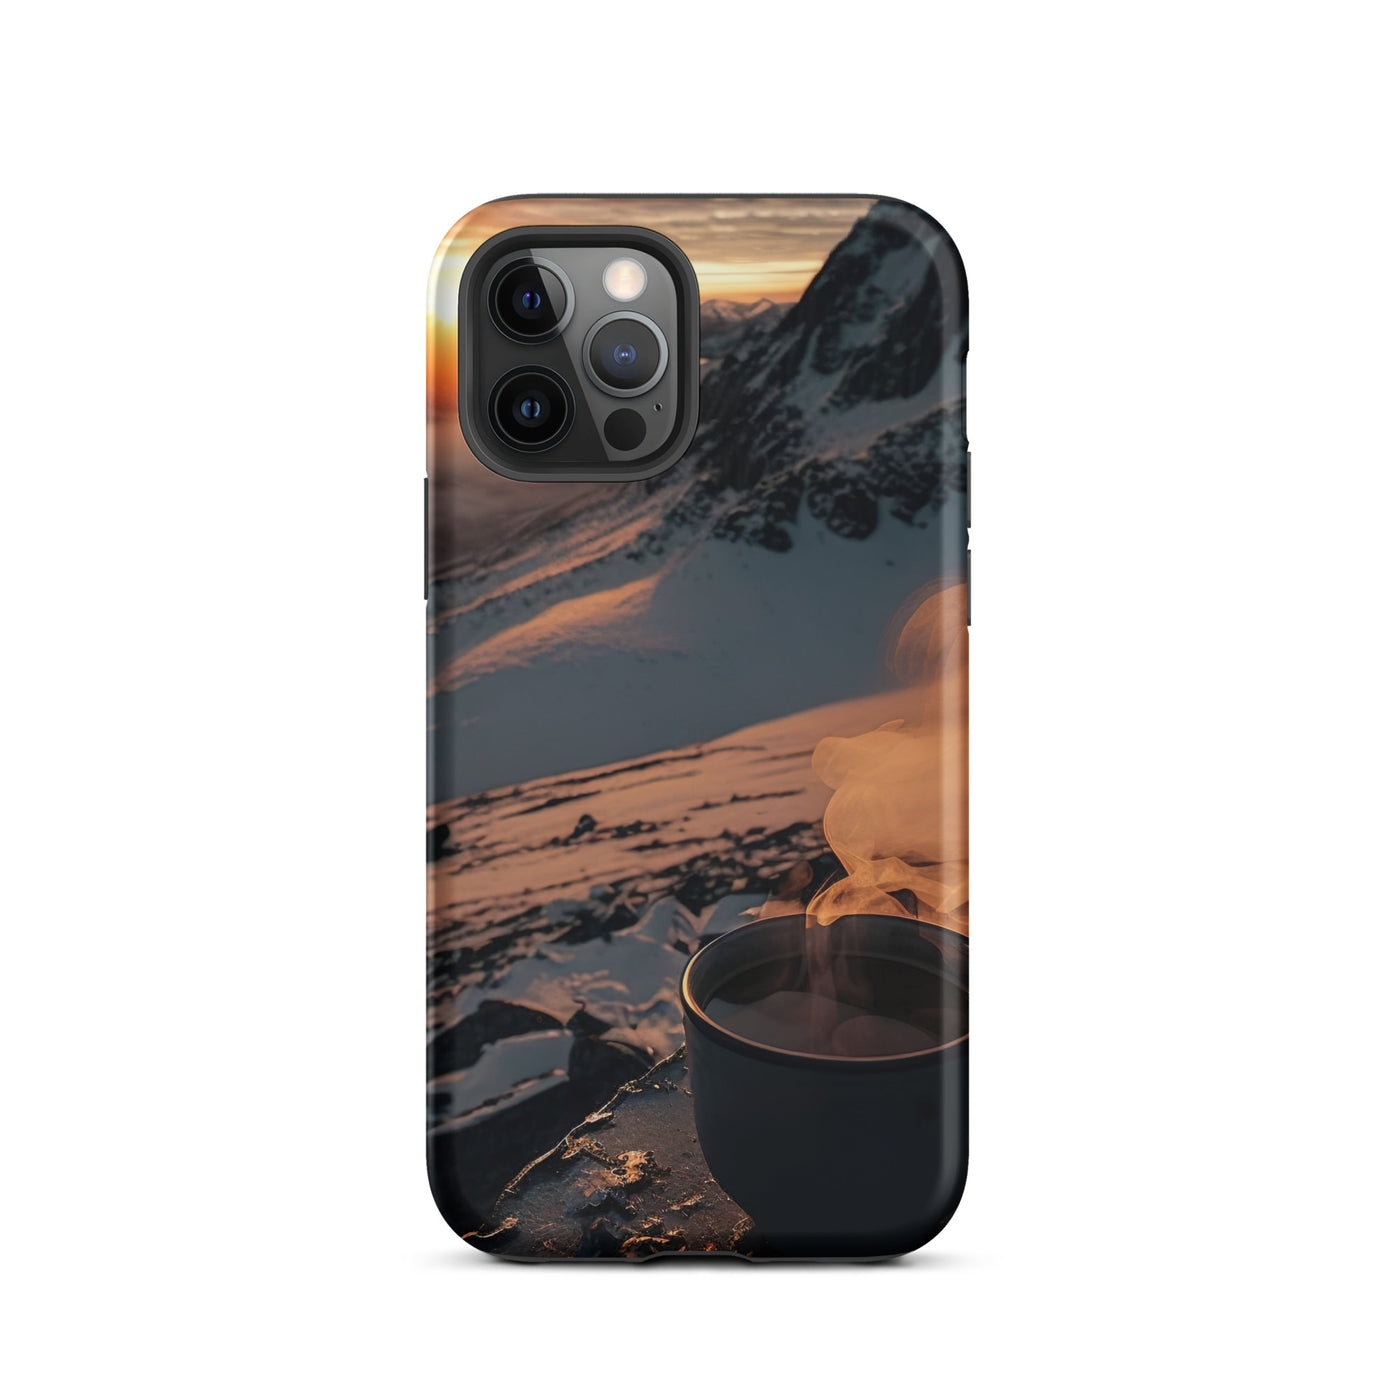 Heißer Kaffee auf einem schneebedeckten Berg - iPhone Schutzhülle (robust) berge xxx iPhone 12 Pro